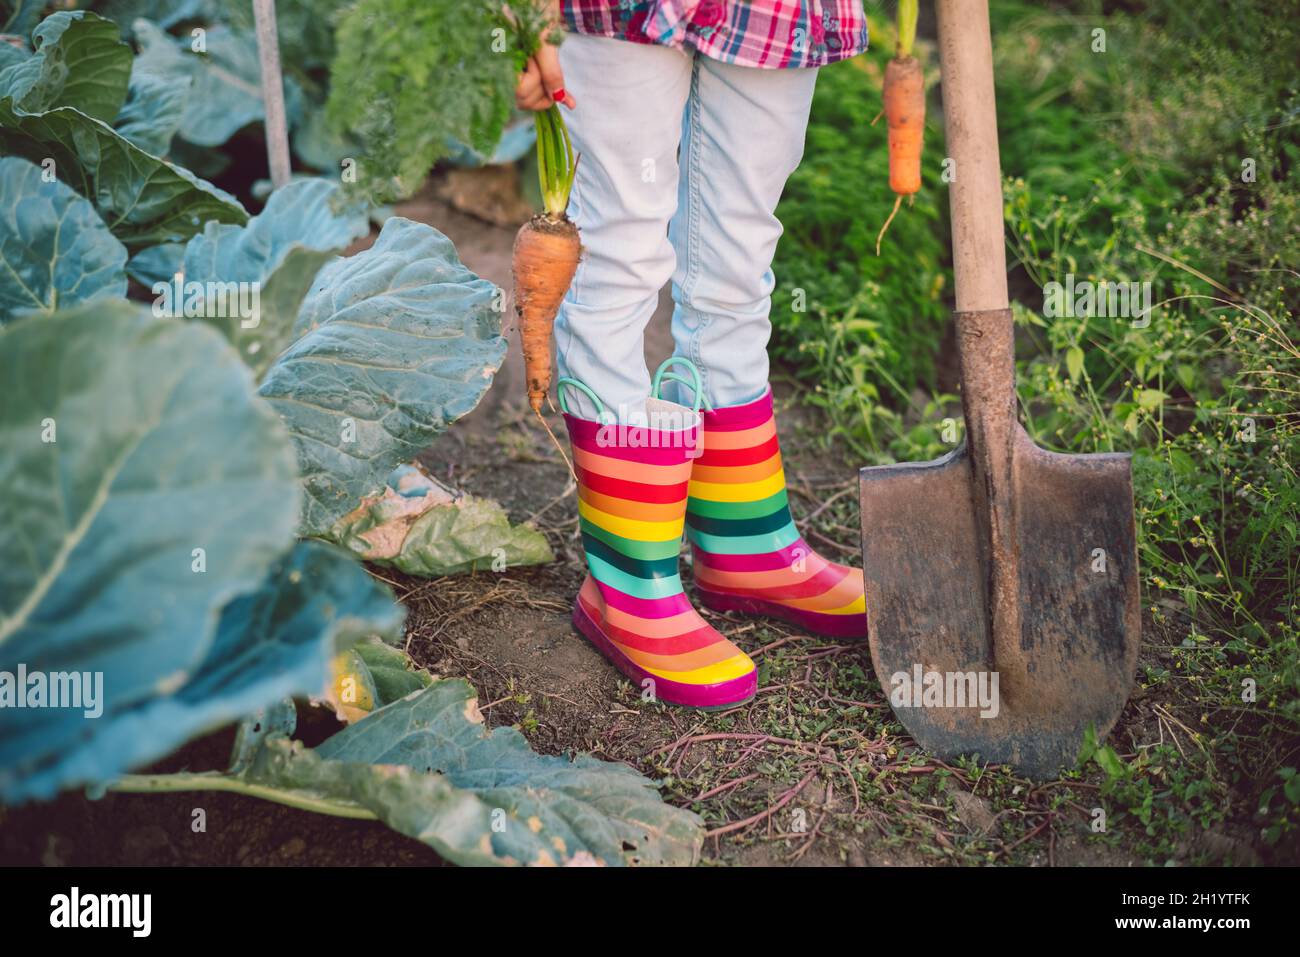 Kleine Gärtnerin im Gemüsegarten hält frische biologische gerade geerntete Karotten Stockfoto